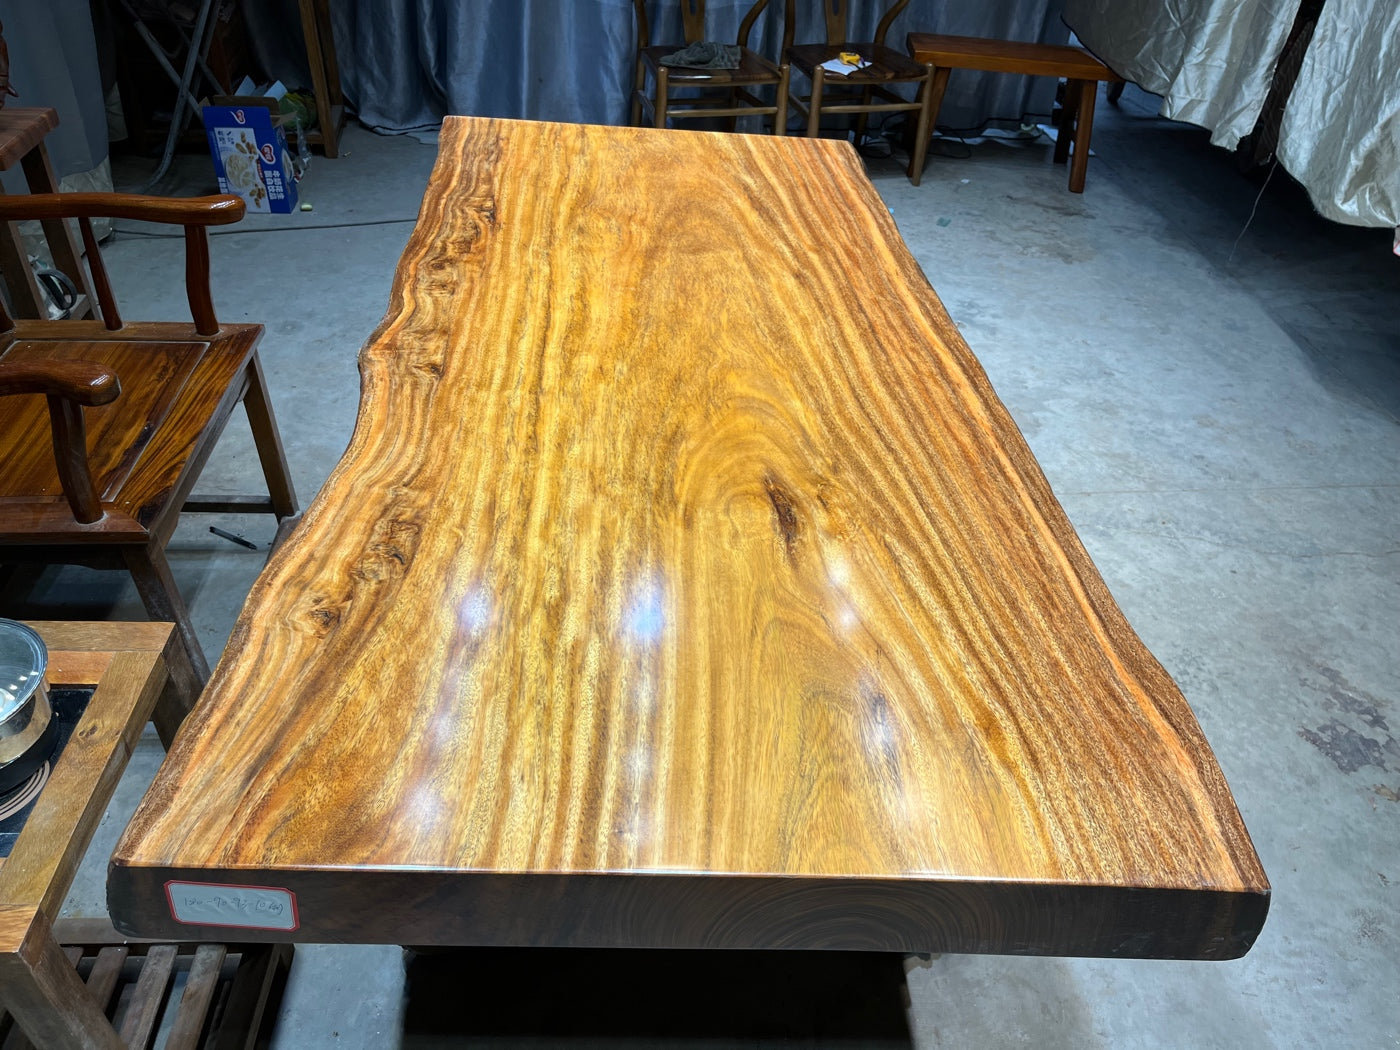 Tali wood slab tables, live edge table slab, maple slab table